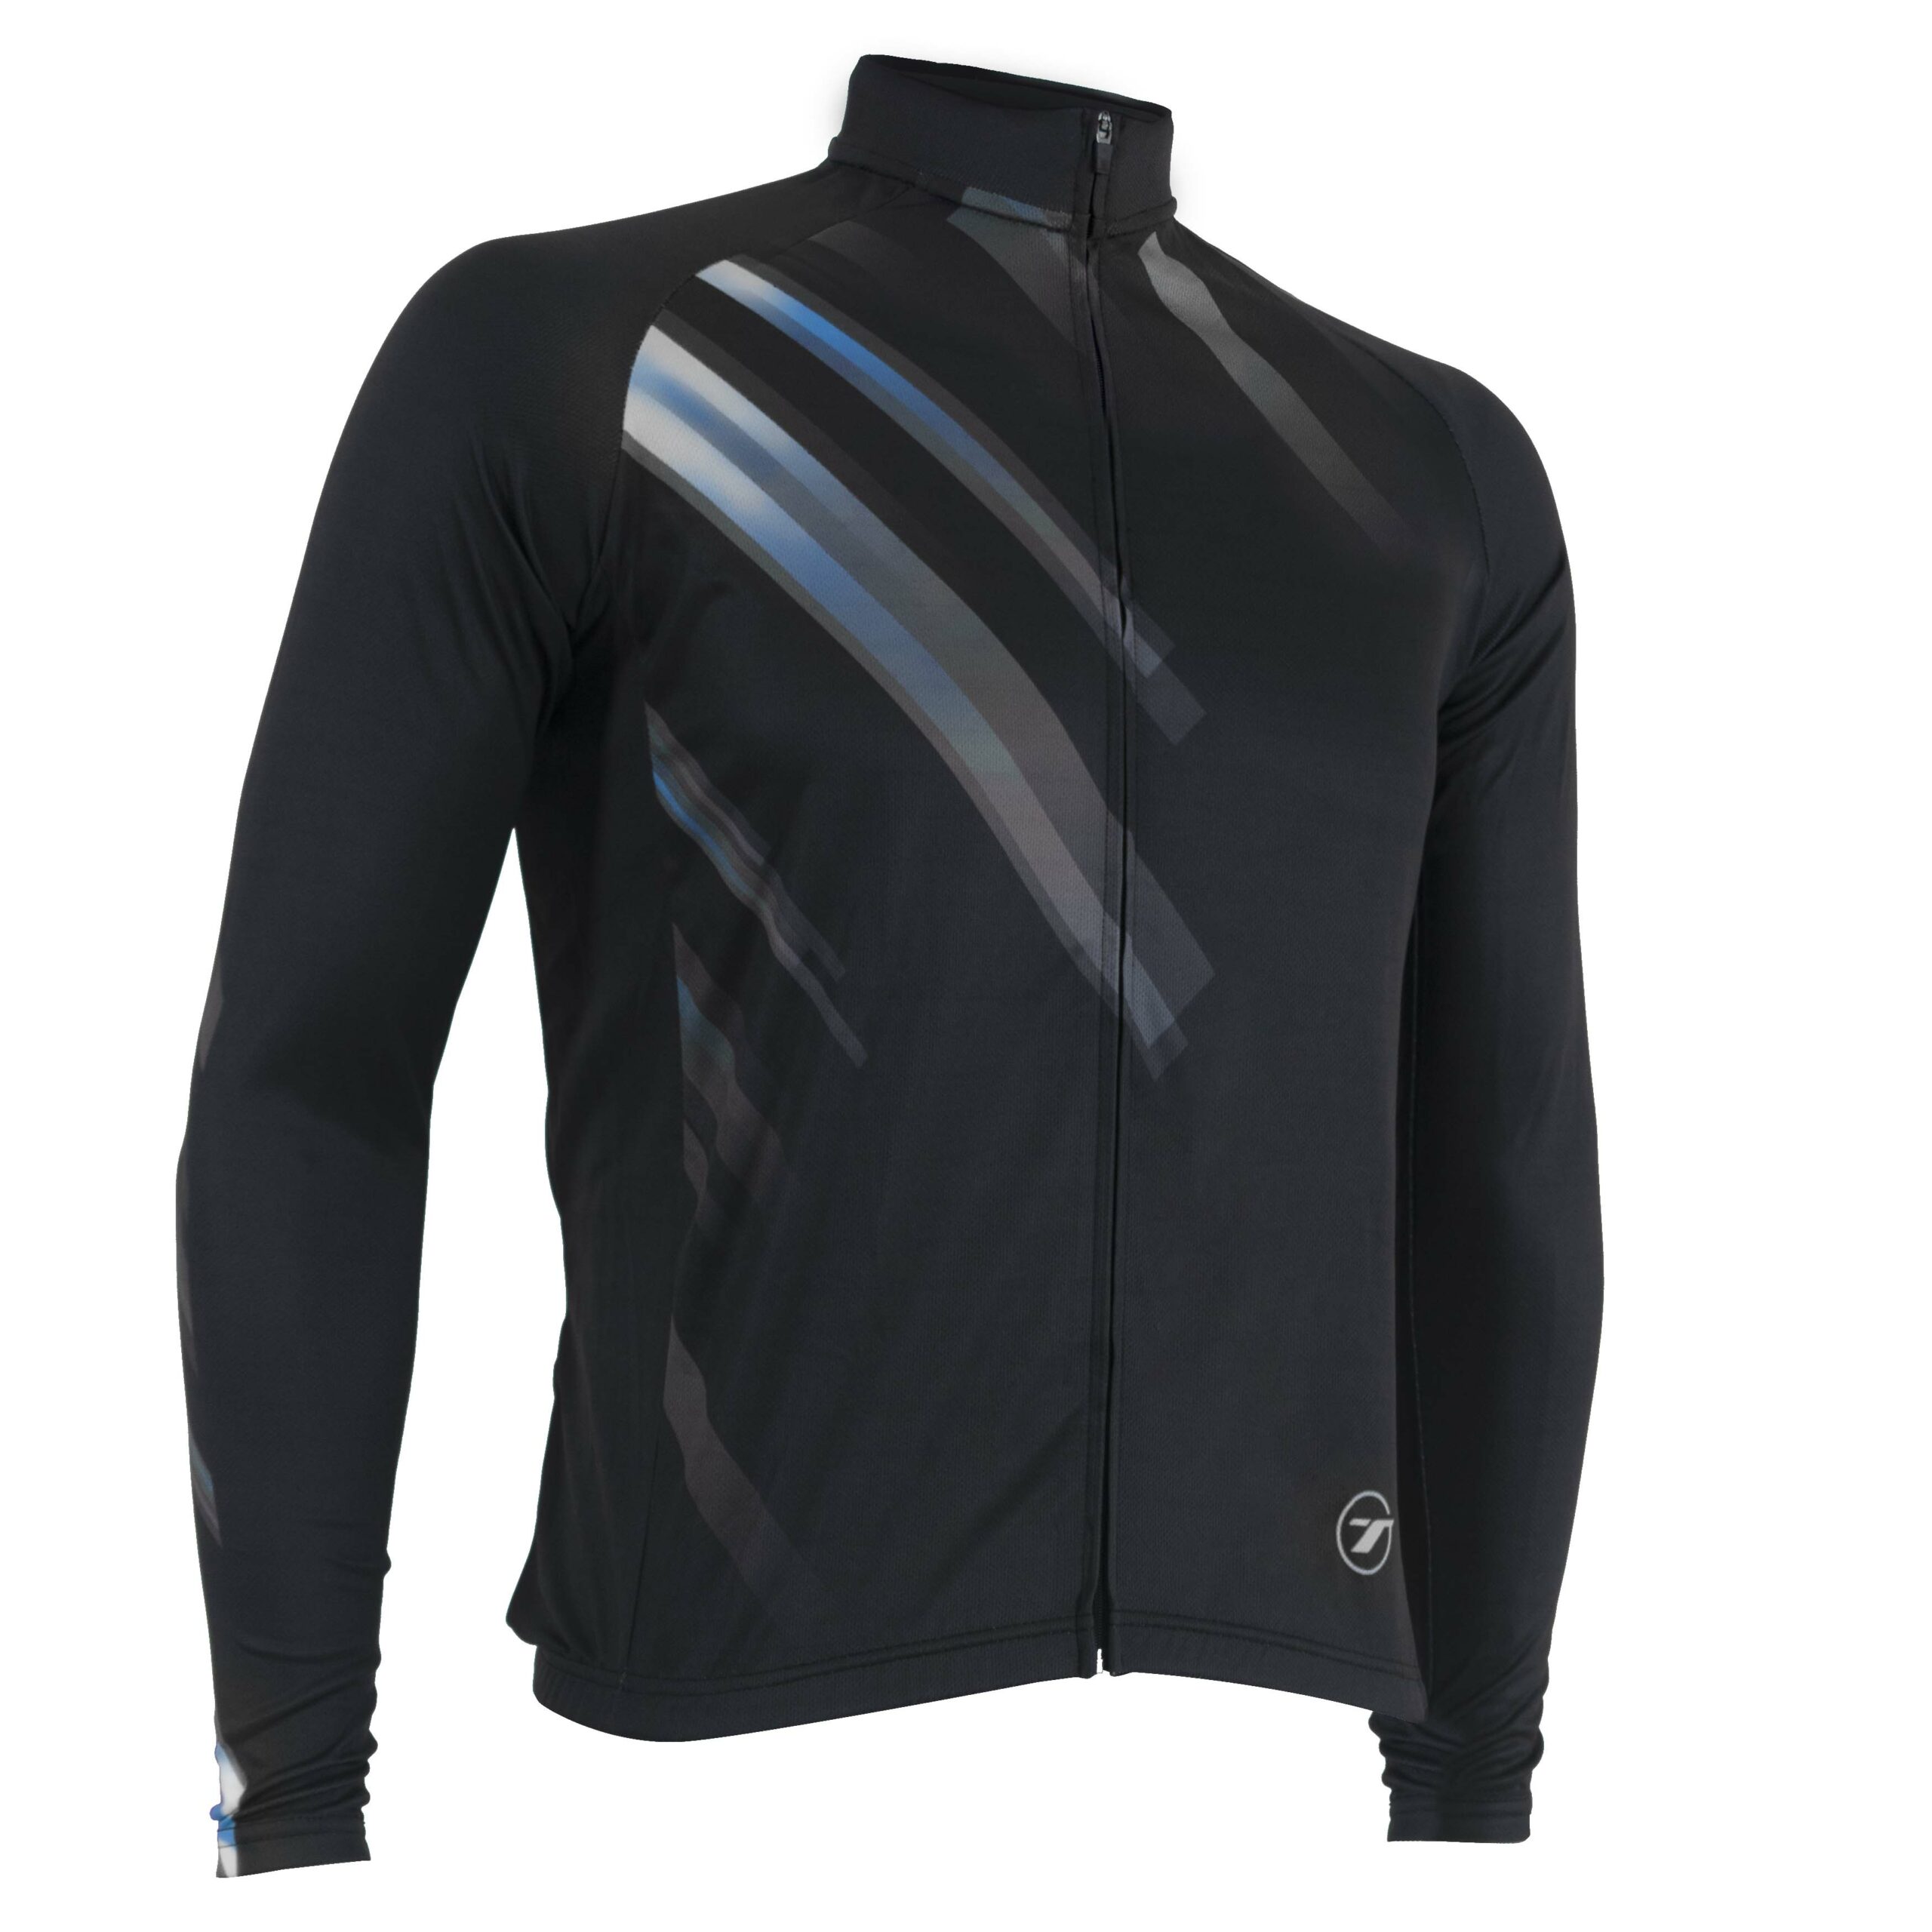 Camisa manga longa para ciclismo SUNNY | RIDE LINE - Preto/Cinza, M